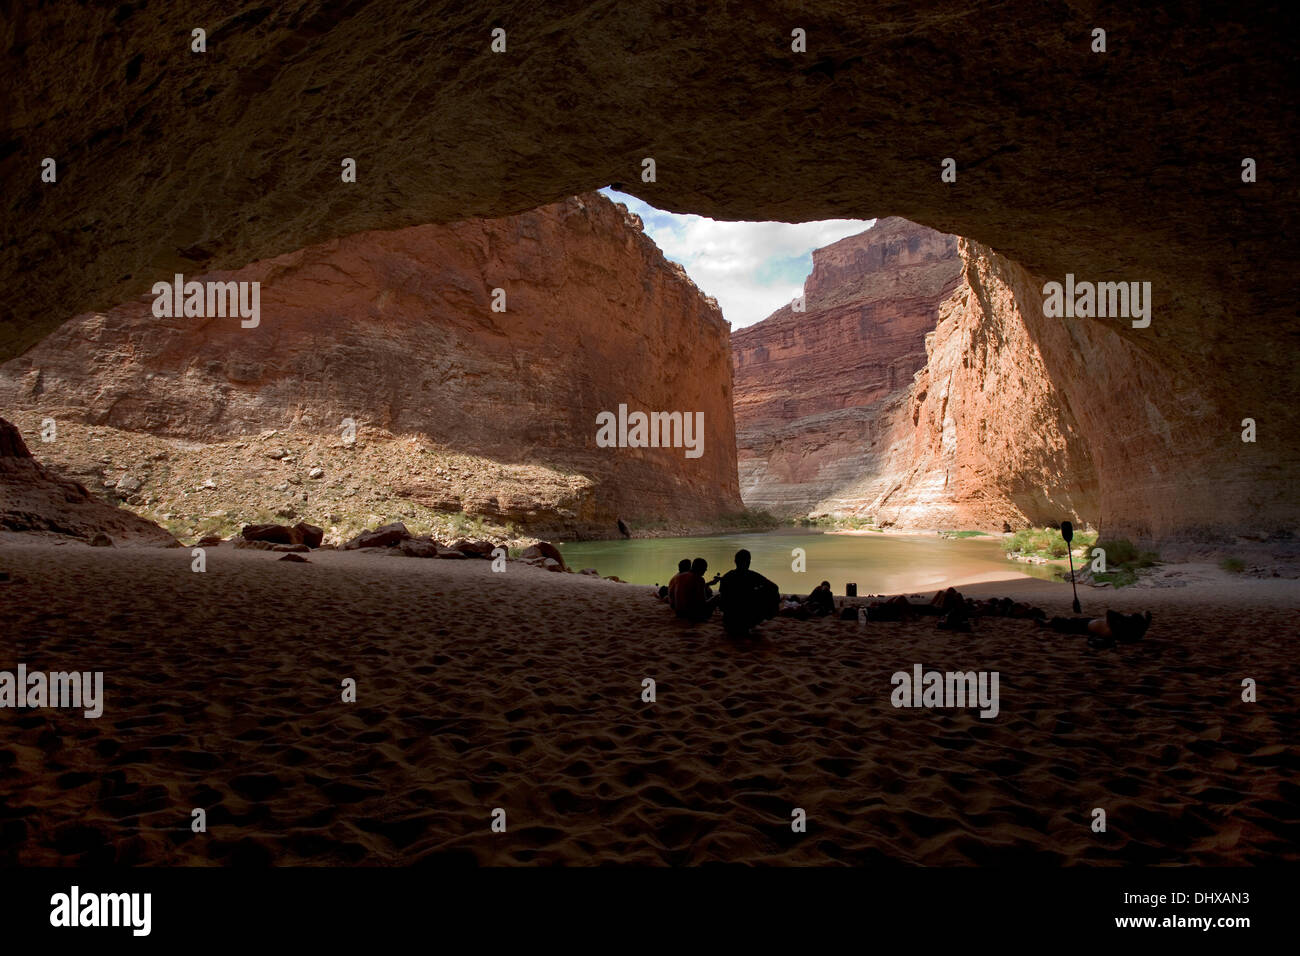 Un gruppo di balseros rilassa e suona la chitarra all'interno della caverna Redwall nel Grand Canyon, Arizona, Stati Uniti d'America Foto Stock